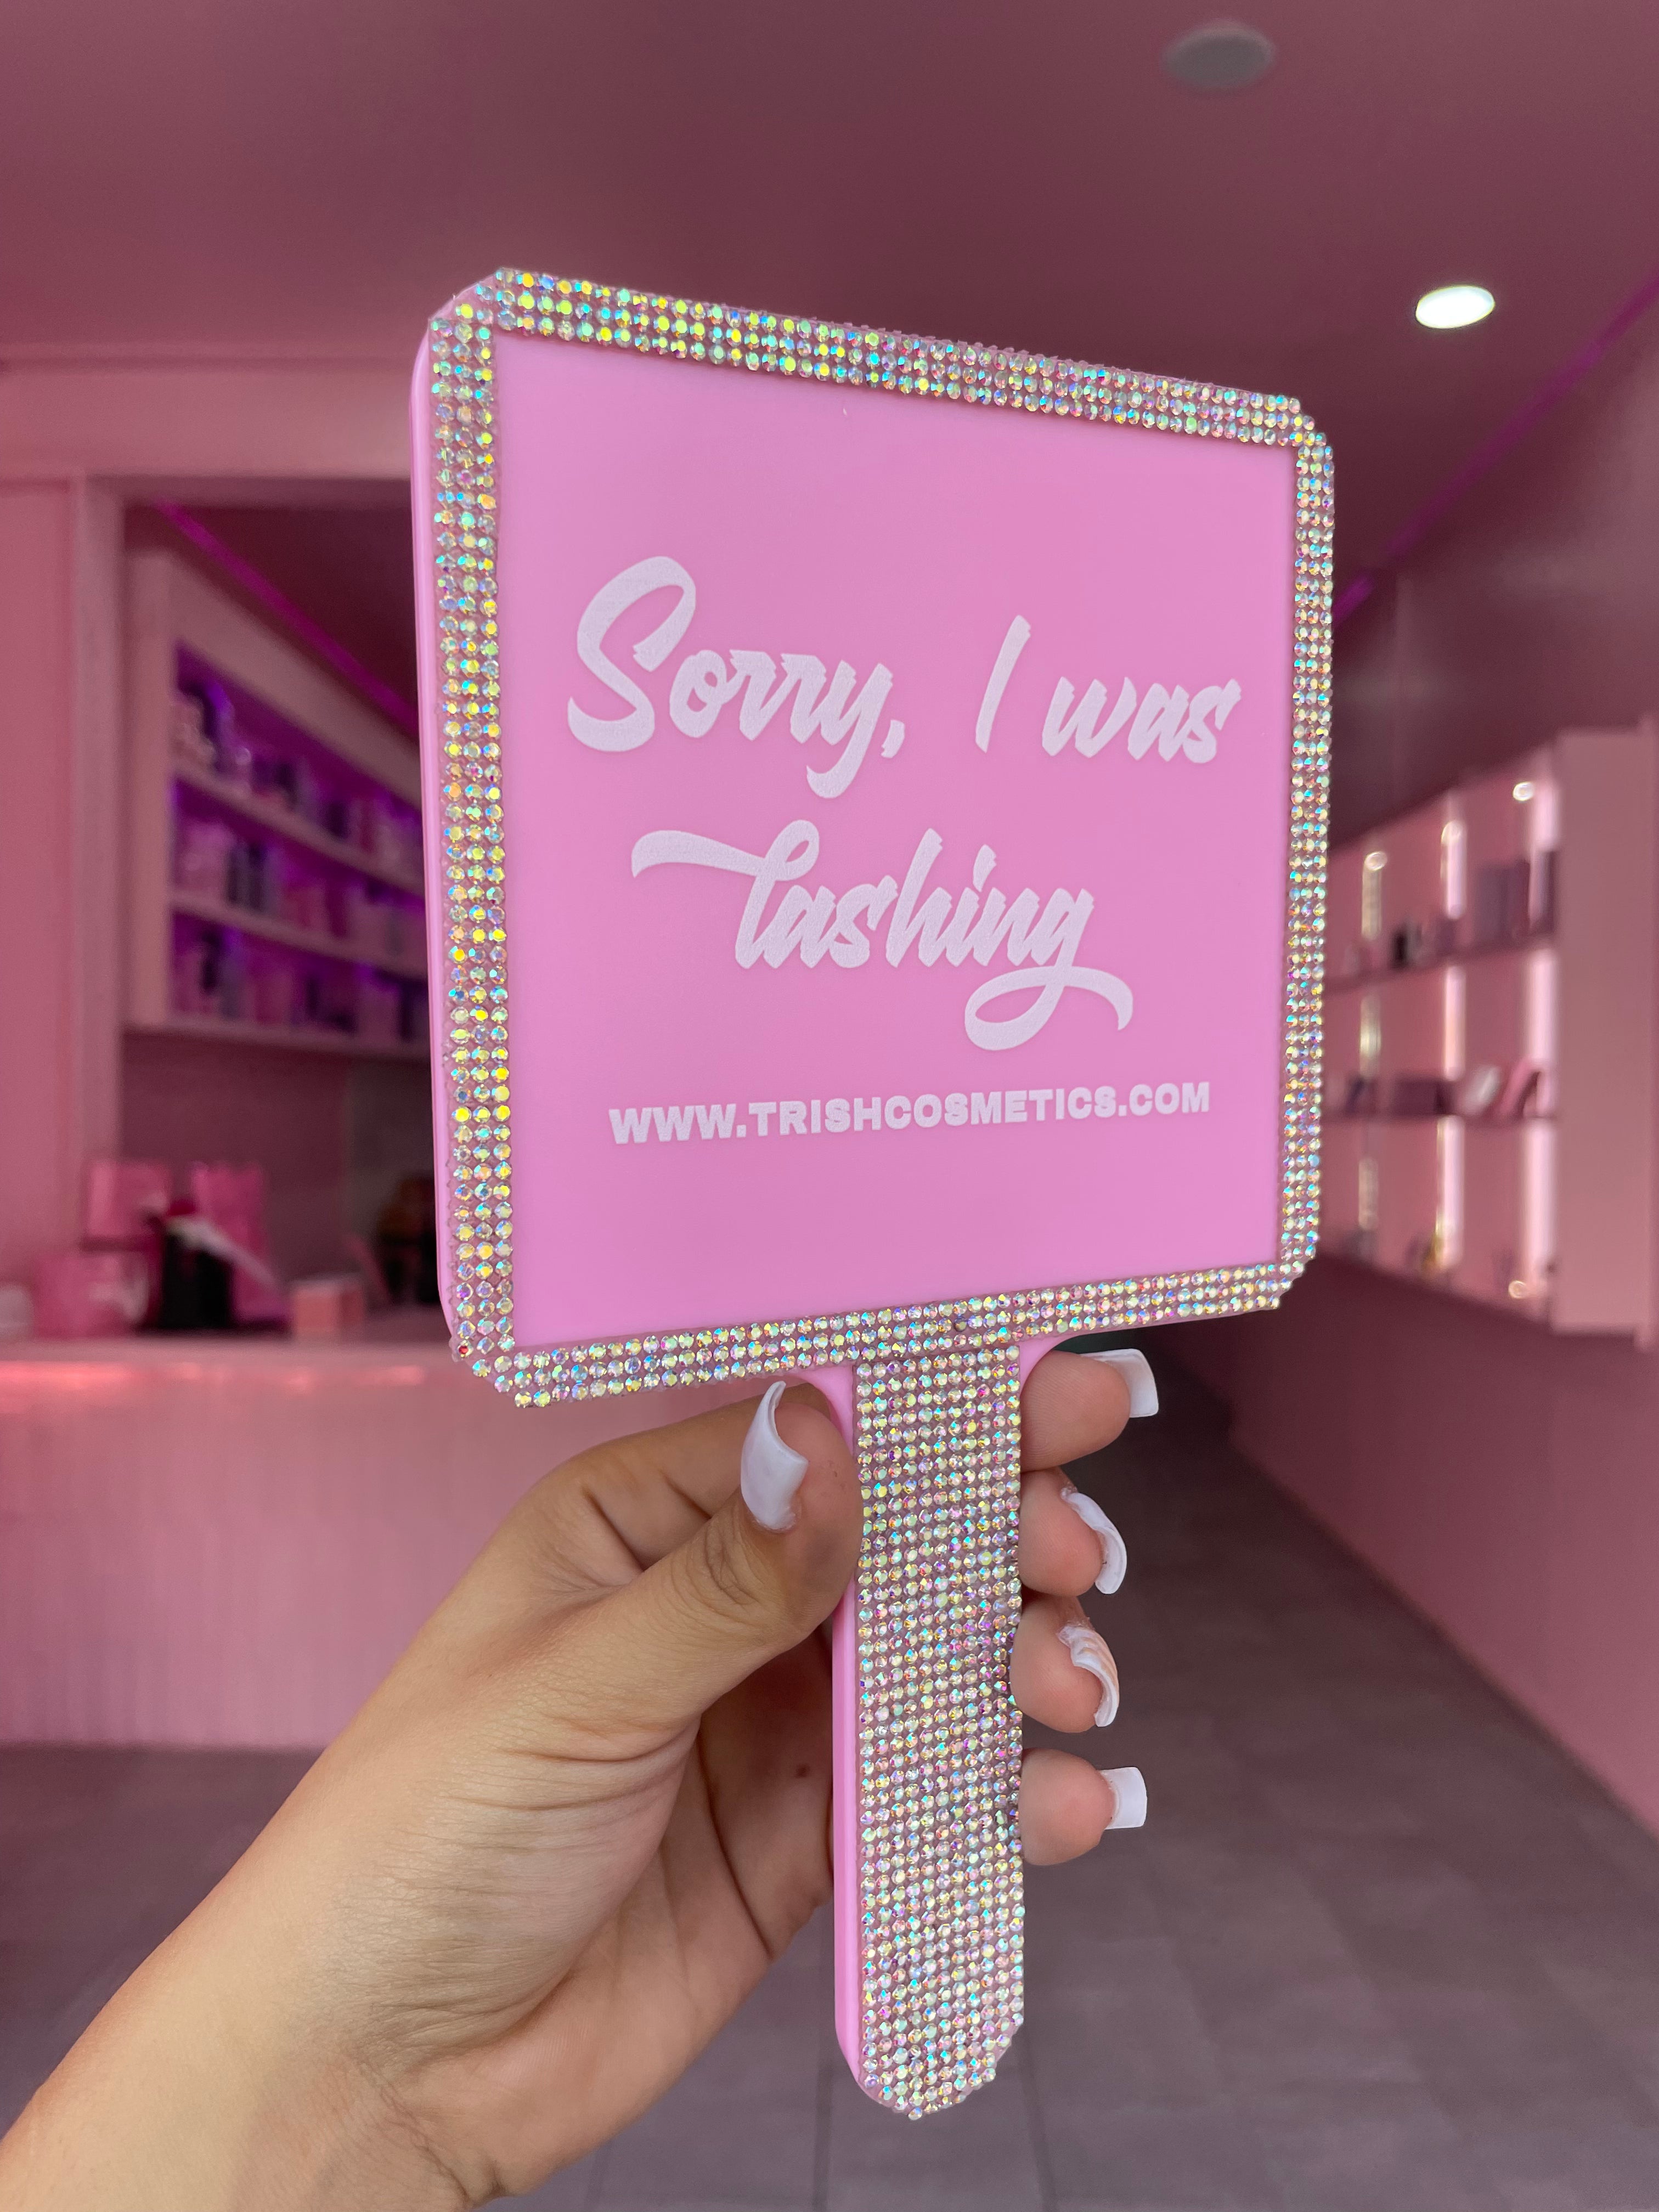 “Sorry, I was lashing” mirror